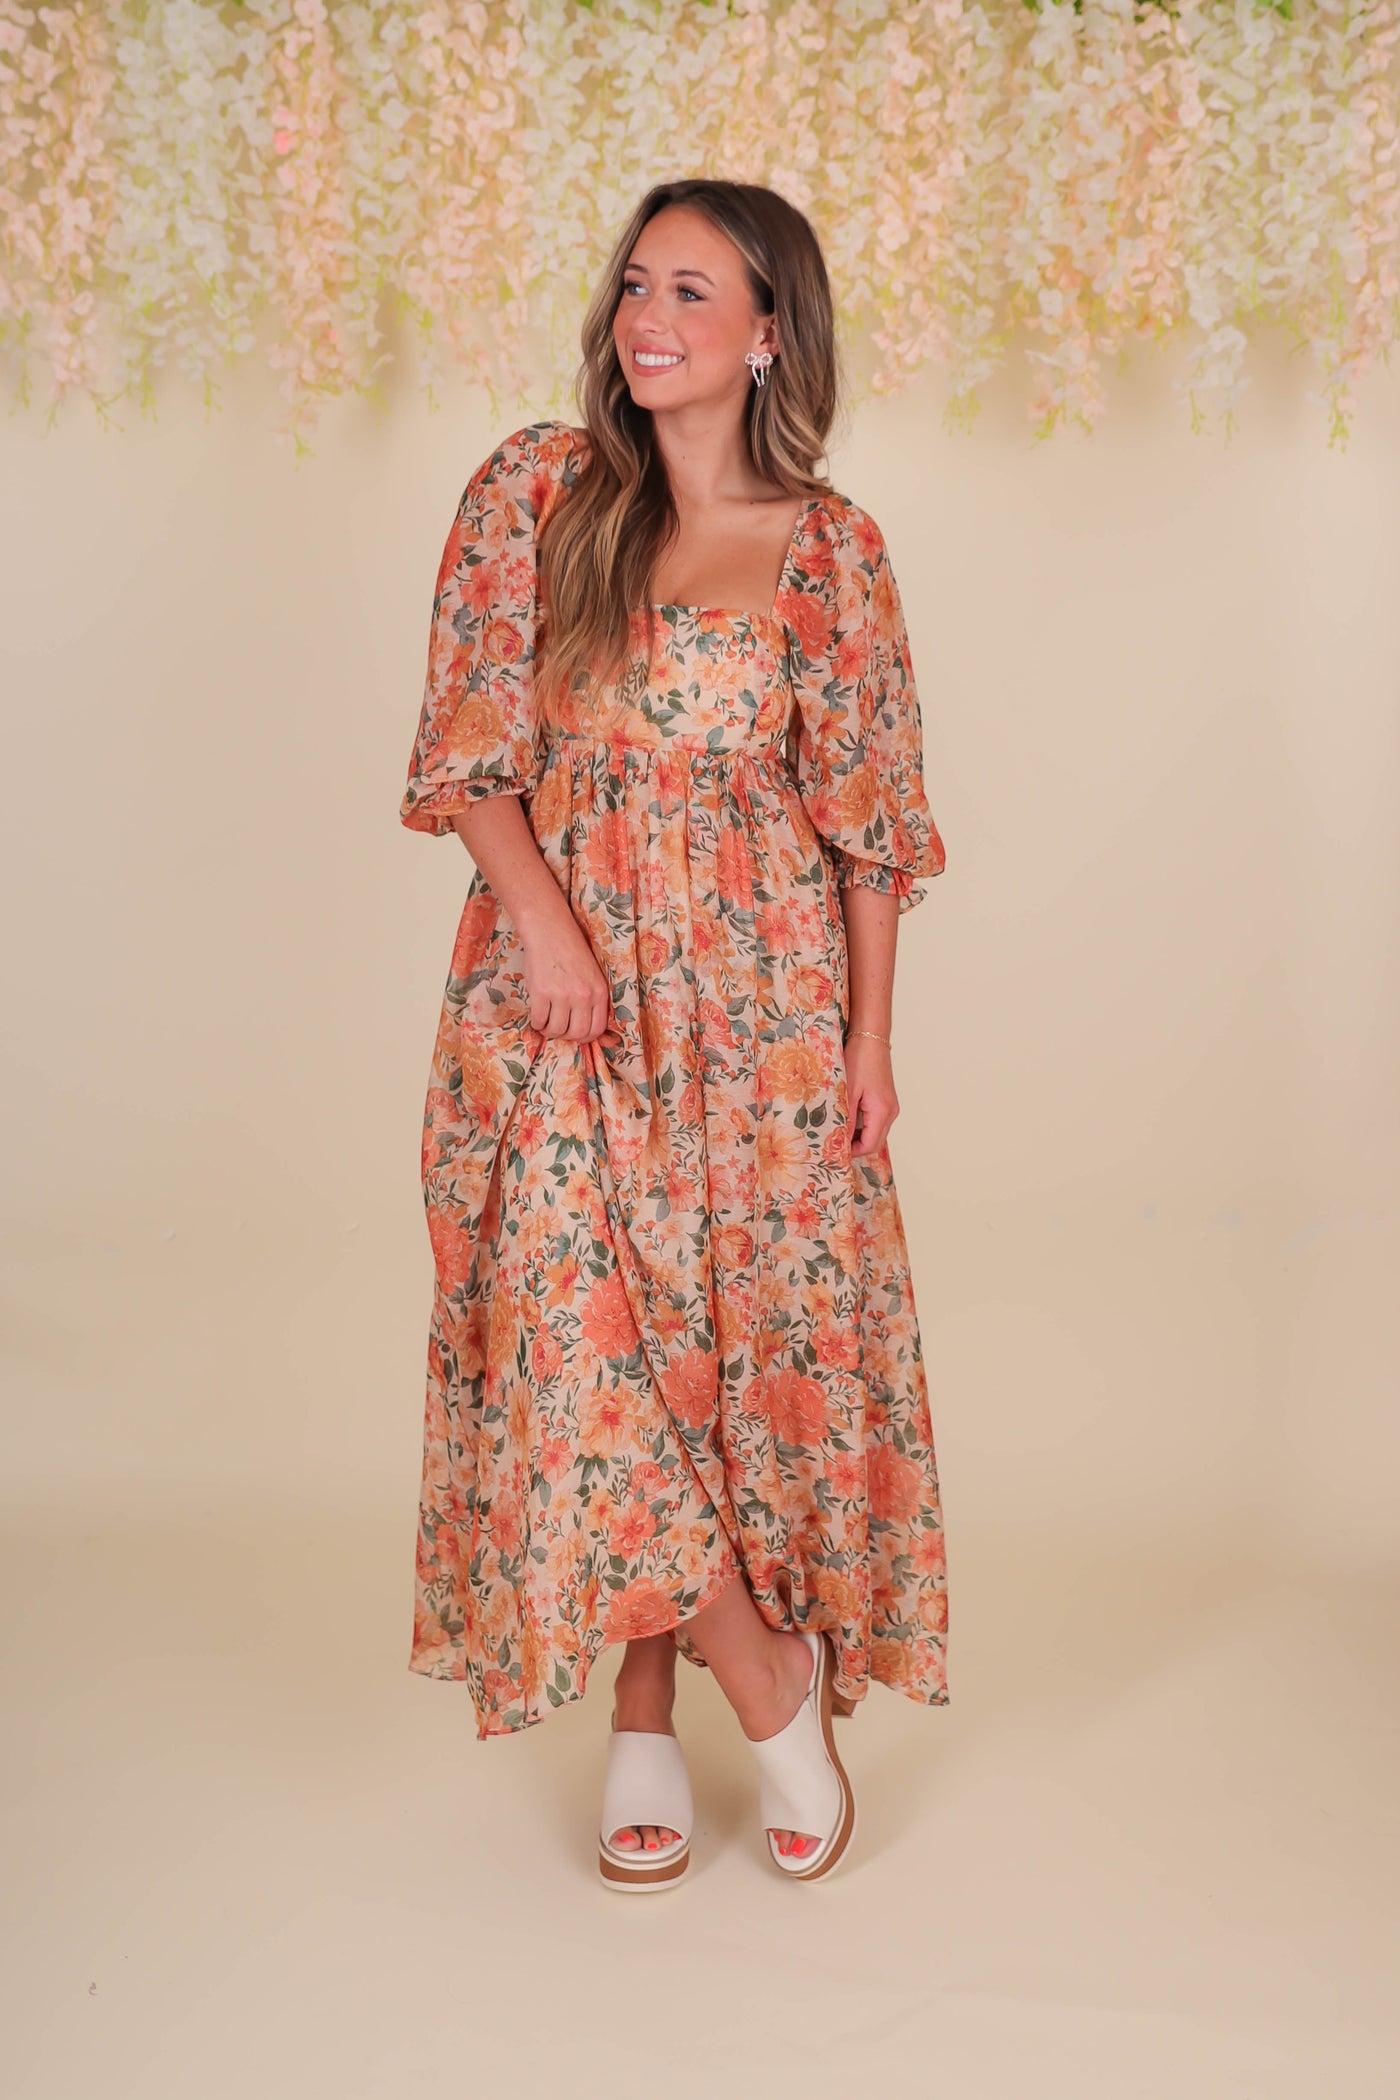 Women's Fall Floral Midi Dress- Beautiful Midi Dress- Storia Flower Dress